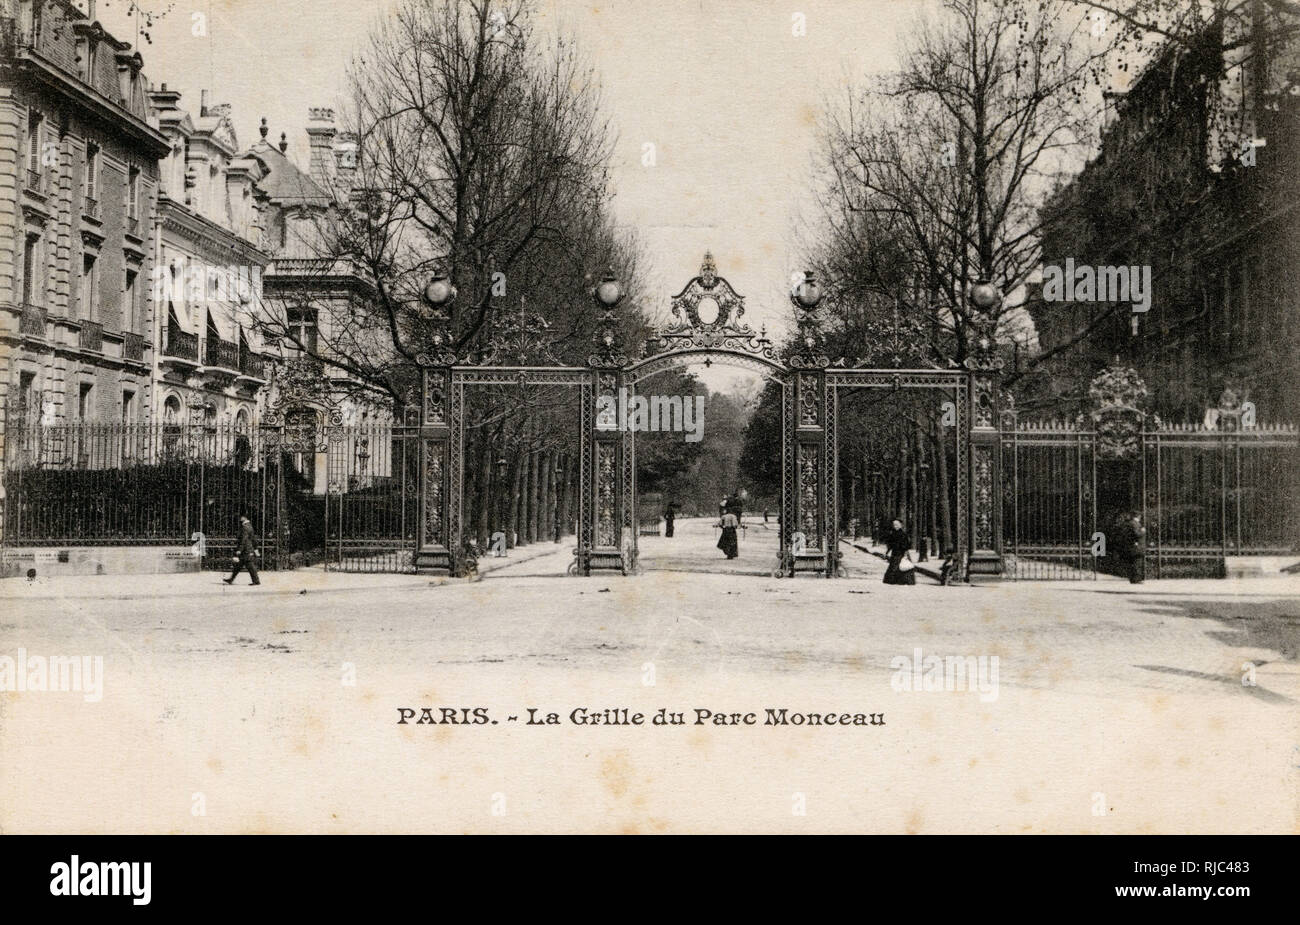 Paris, France - La Grille du Parc Monceau - Gates of the Monceau Park. Stock Photo